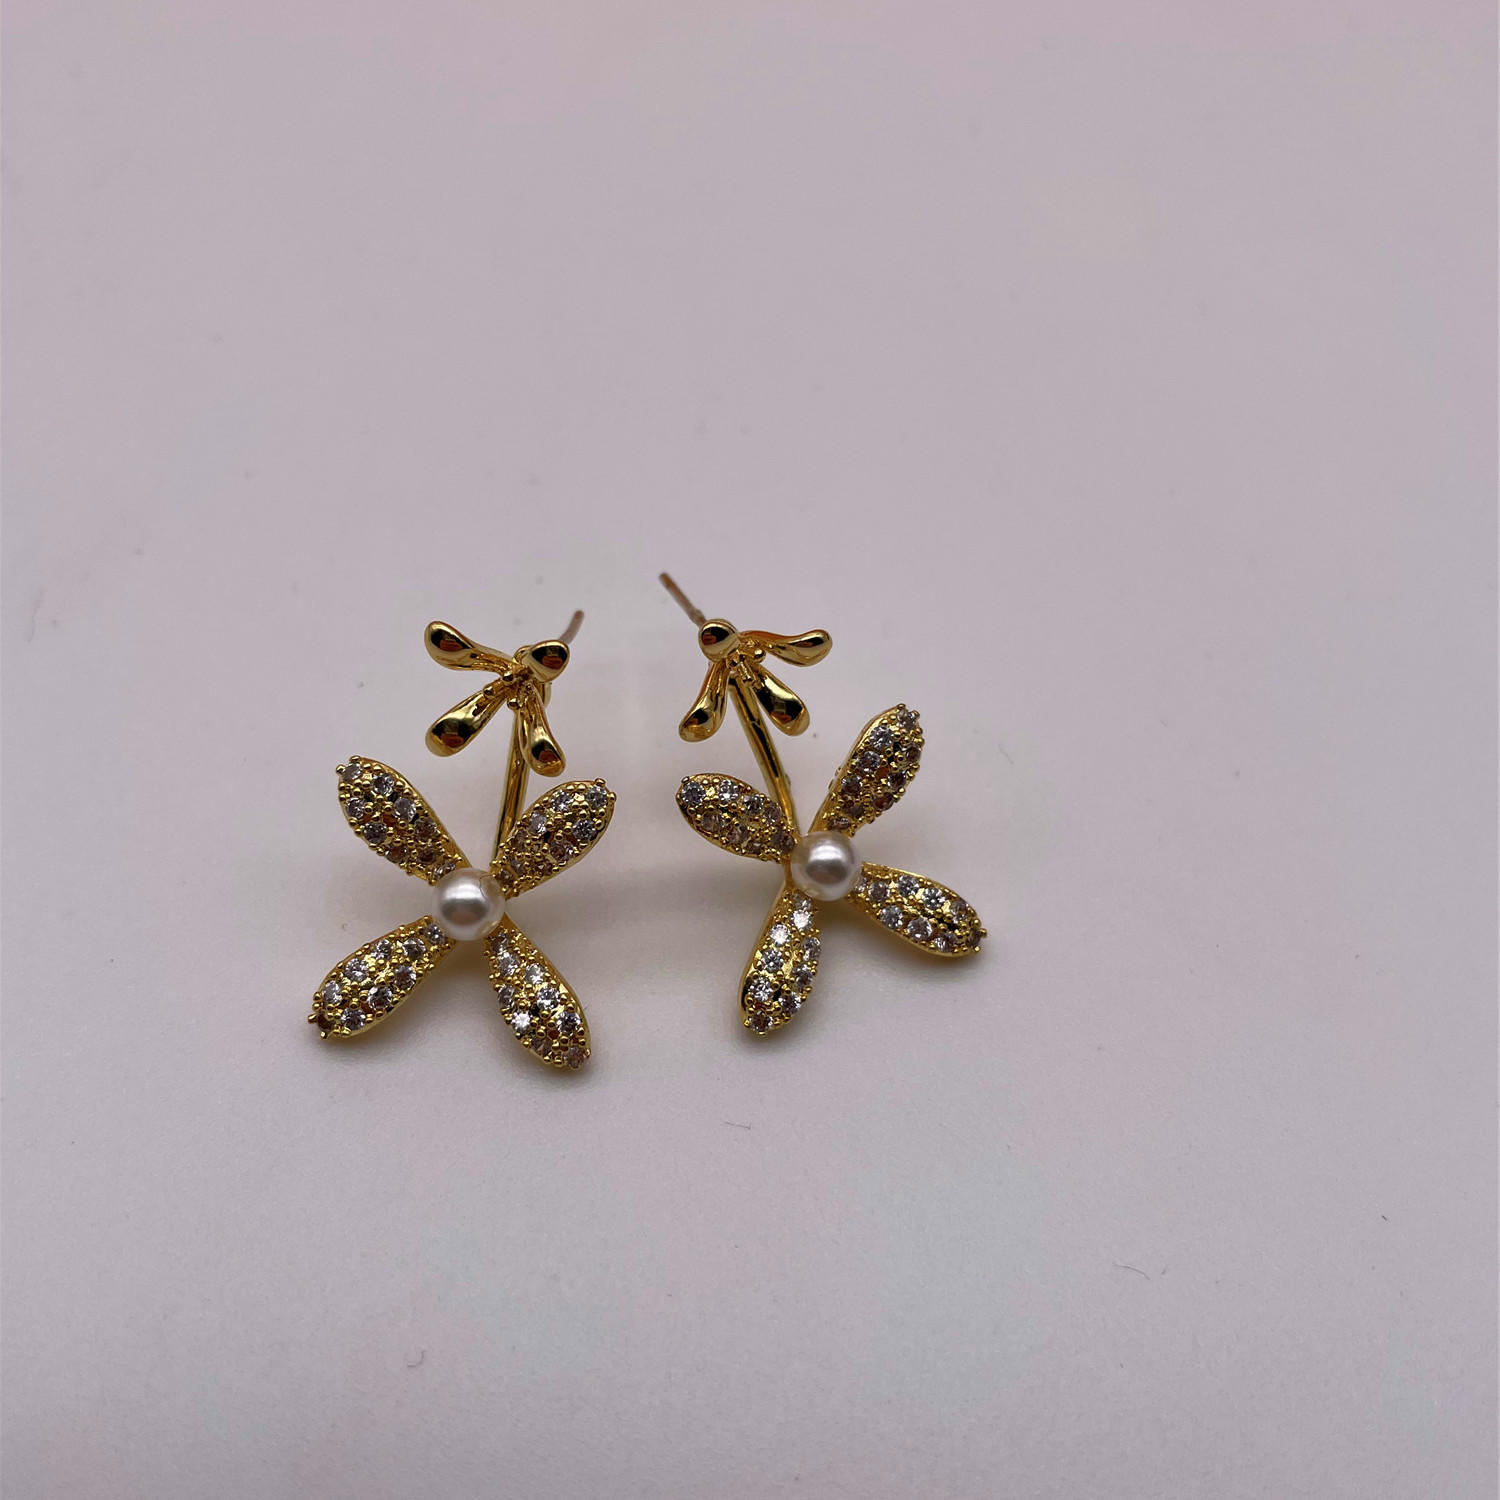 Designs of earrings